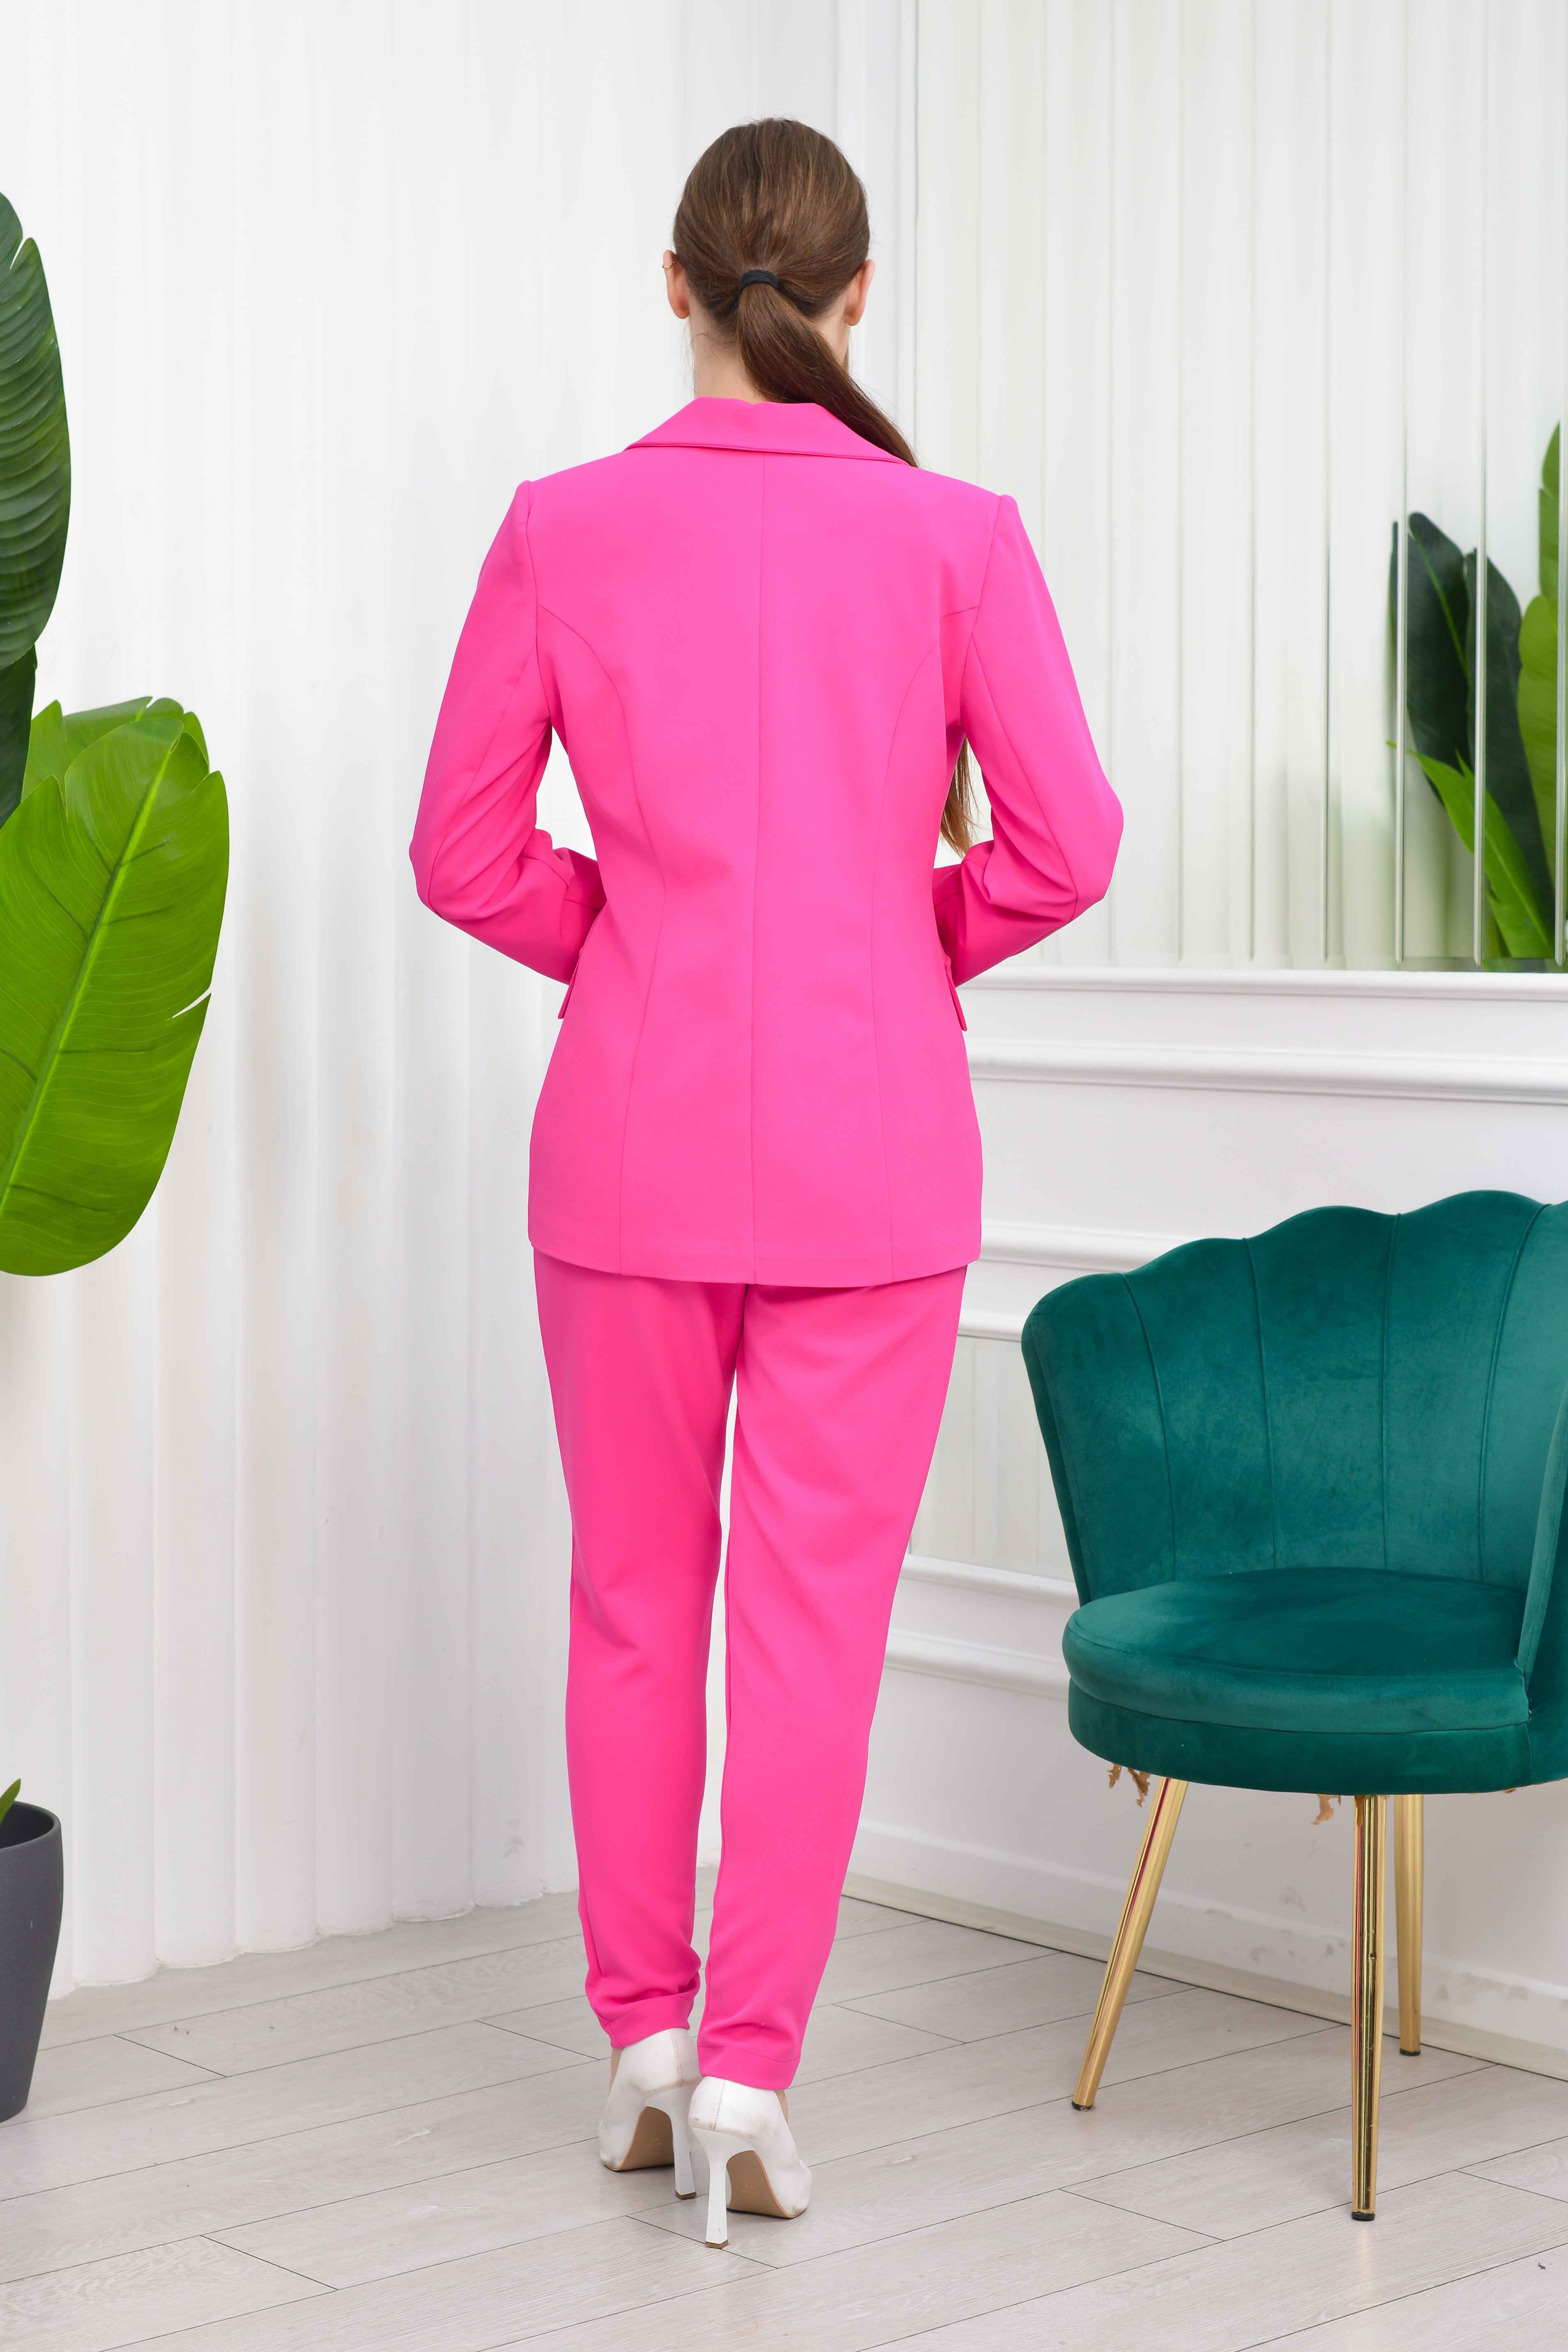 2067 - İthal Atlas Tasarım Ceket Pantolon Büstiyer Takım Elbise